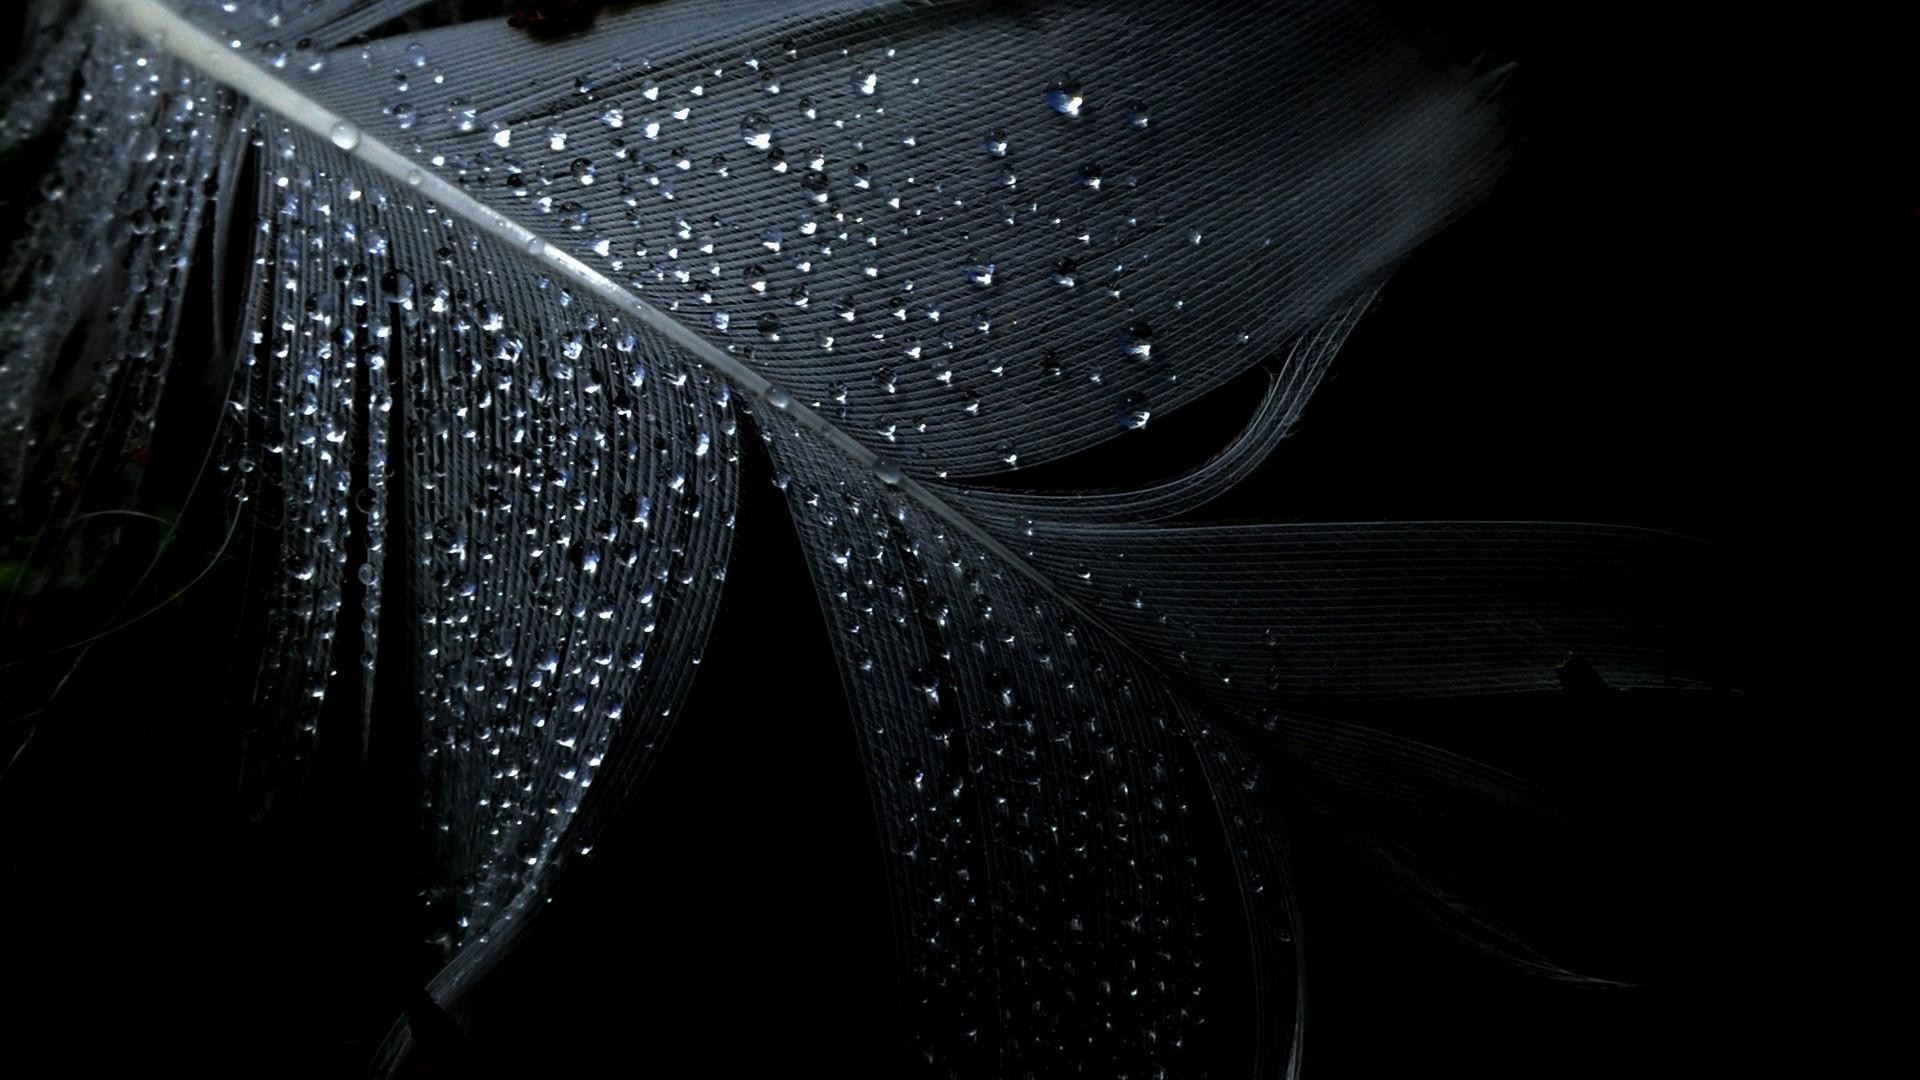 fondo de pantalla dunkel,negro,agua,en blanco y negro,humedad,fotografía monocroma